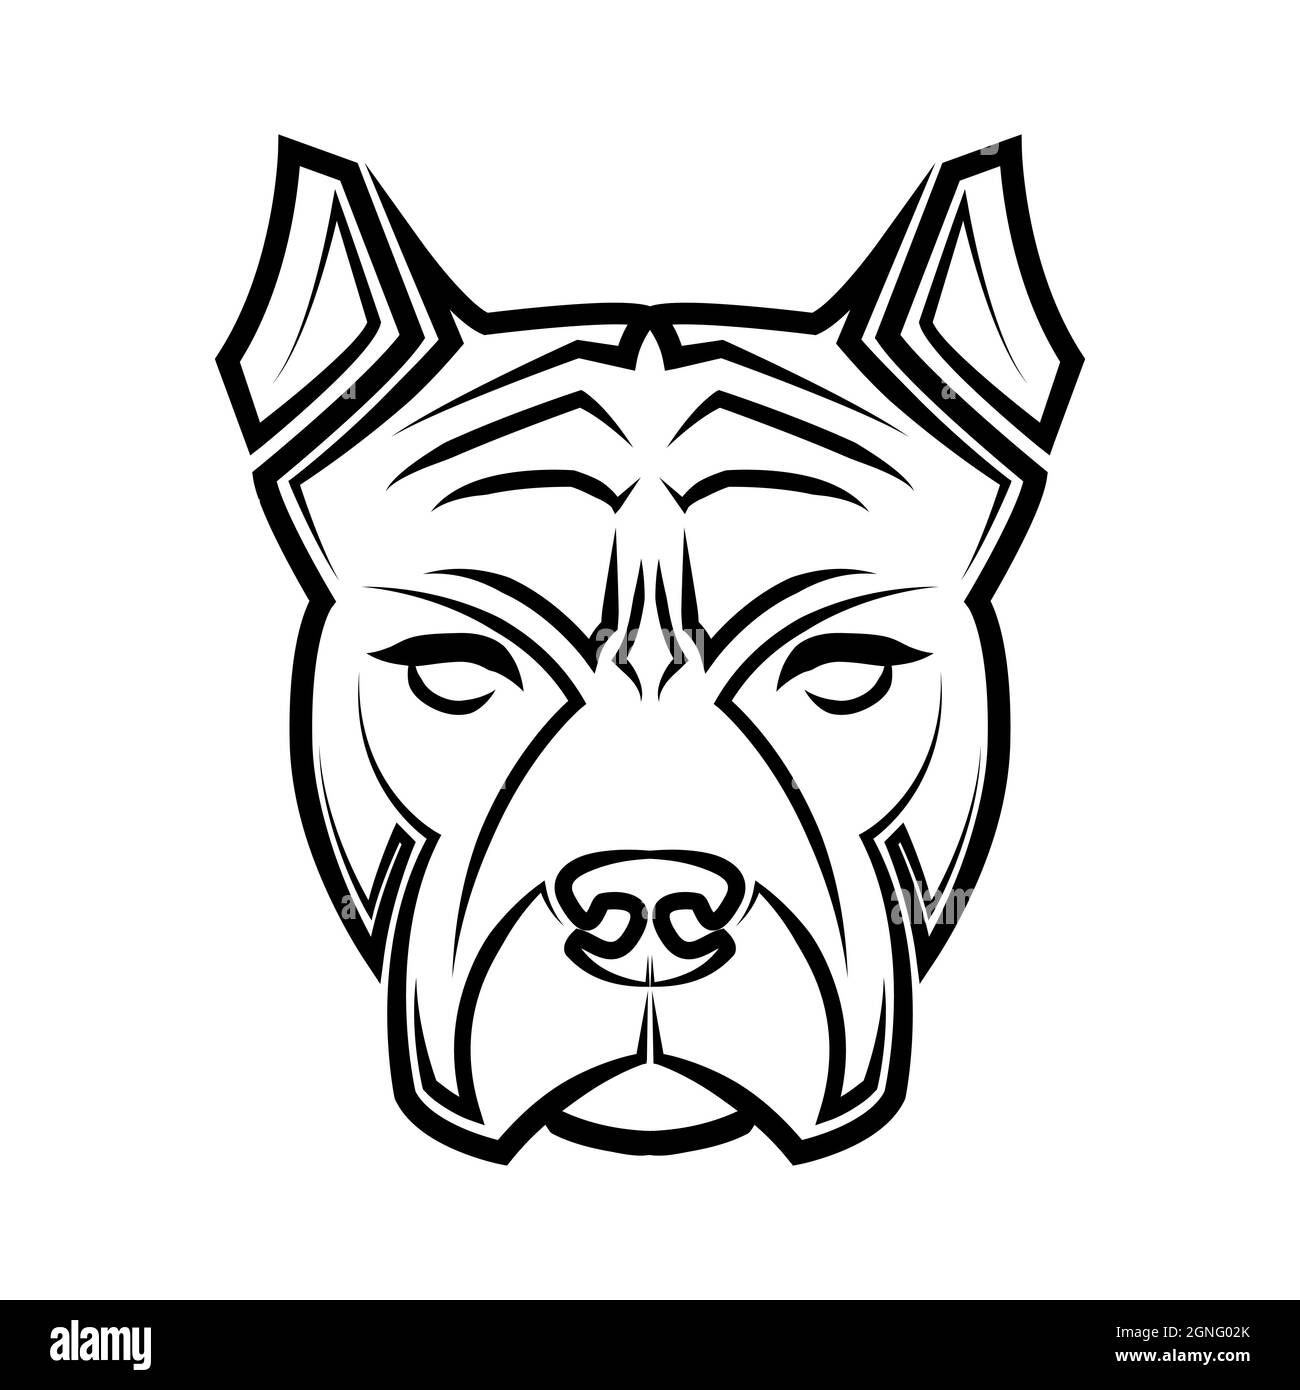 Illustration de la ligne noire et blanche de la tête de chien Pitbull. Bon usage pour symbole, mascotte, icône, avatar, tatouage, T-shirt, logo ou tout autre motif Illustration de Vecteur